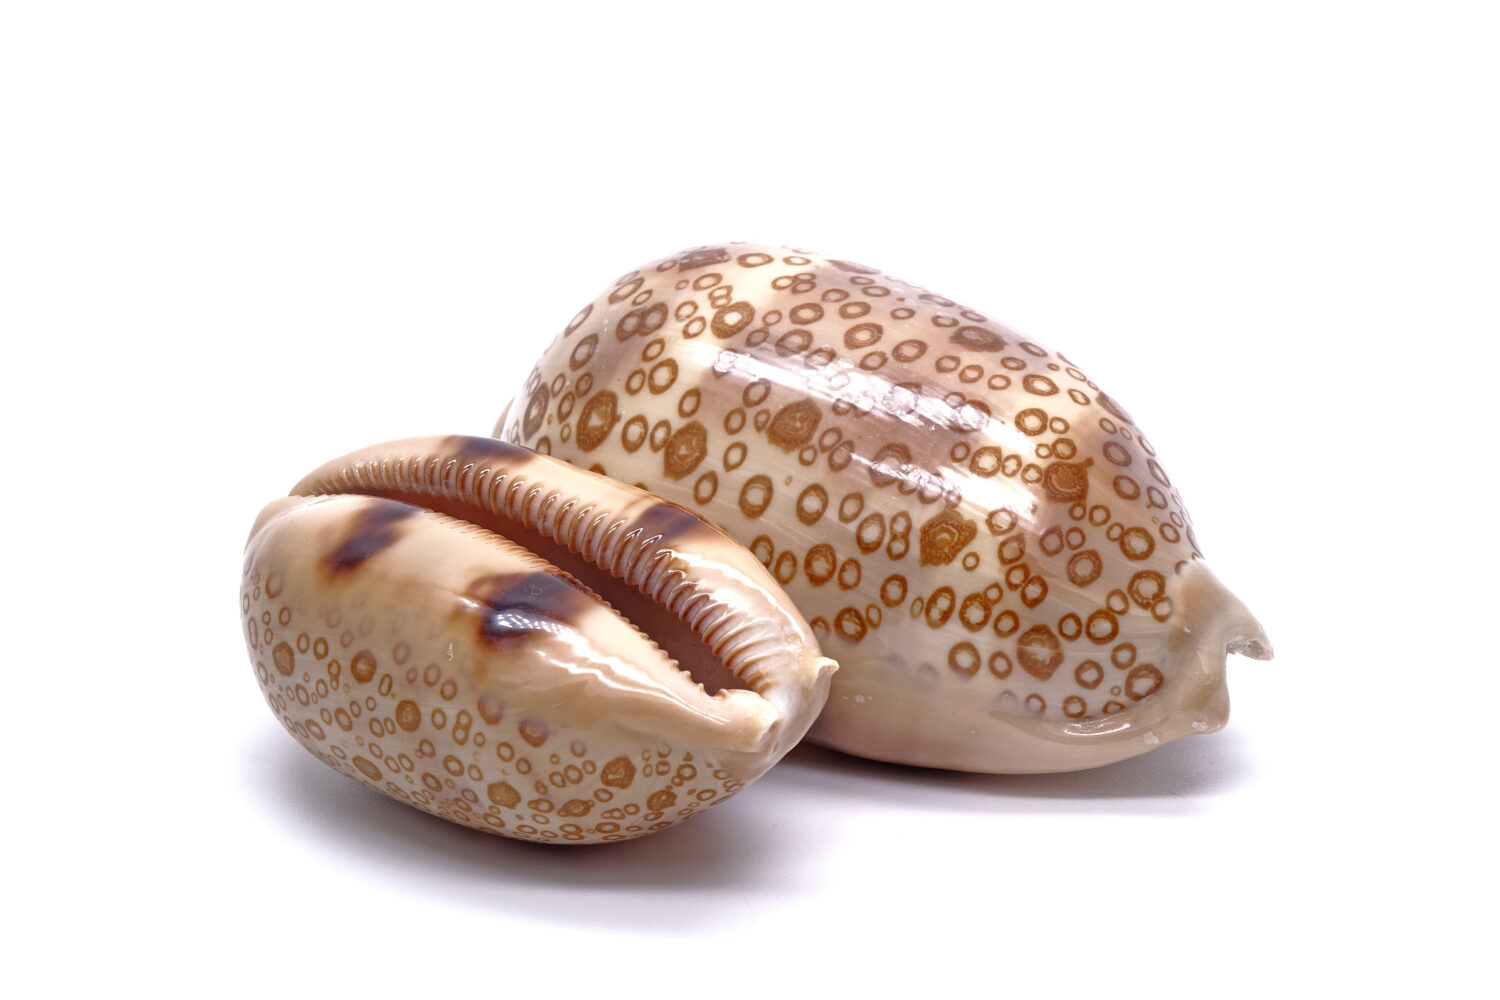 Conchiglia di mare / conchiglie di ciprea: ciprea dagli occhi (Cryprae argus), isolata su sfondo bianco